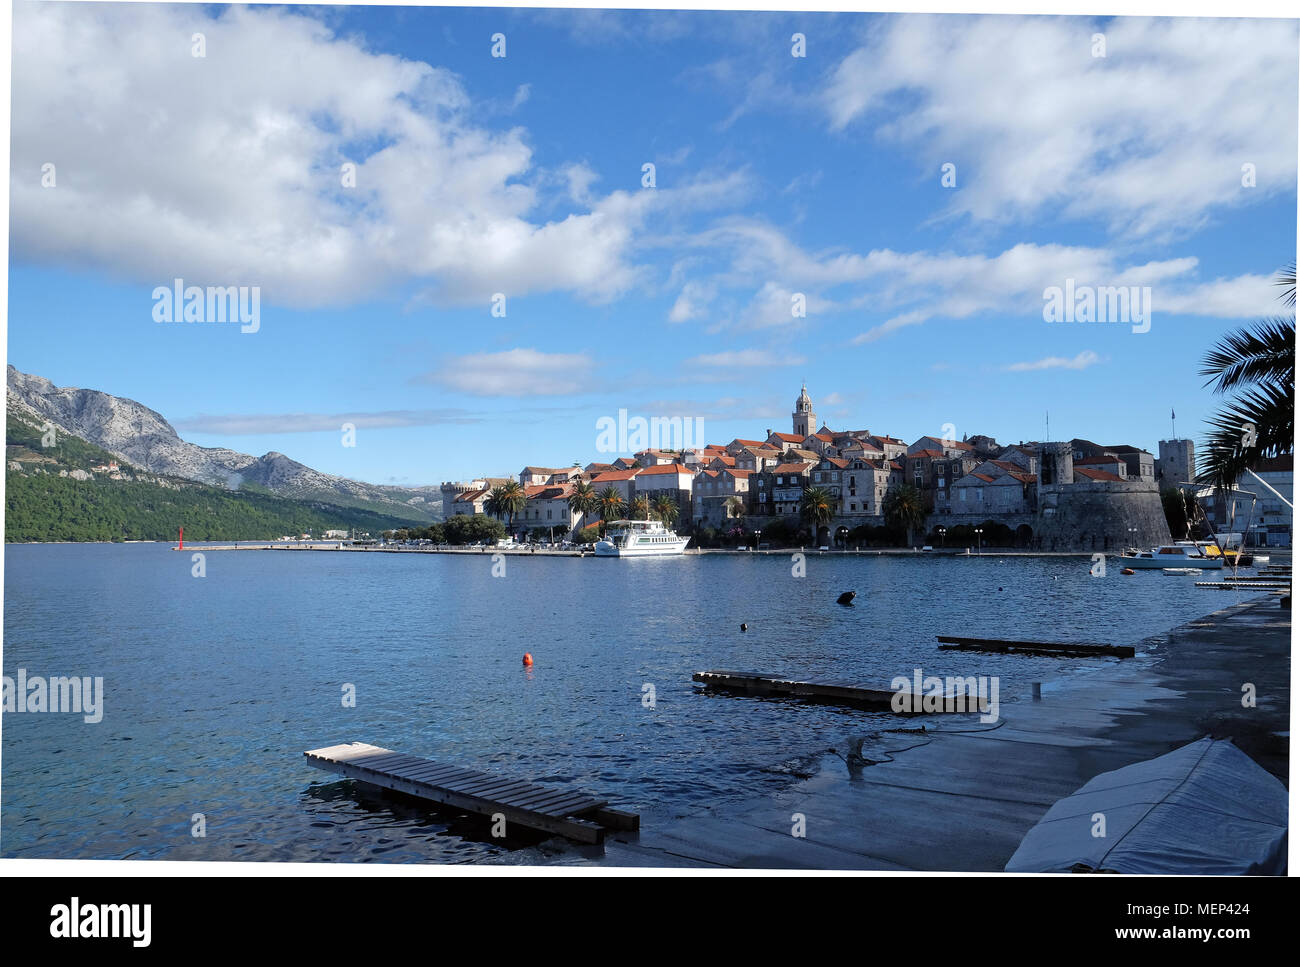 Vue du front de mer pittoresque ville dalmate médiévale de Korcula, la culture croate et destination historique. Banque D'Images